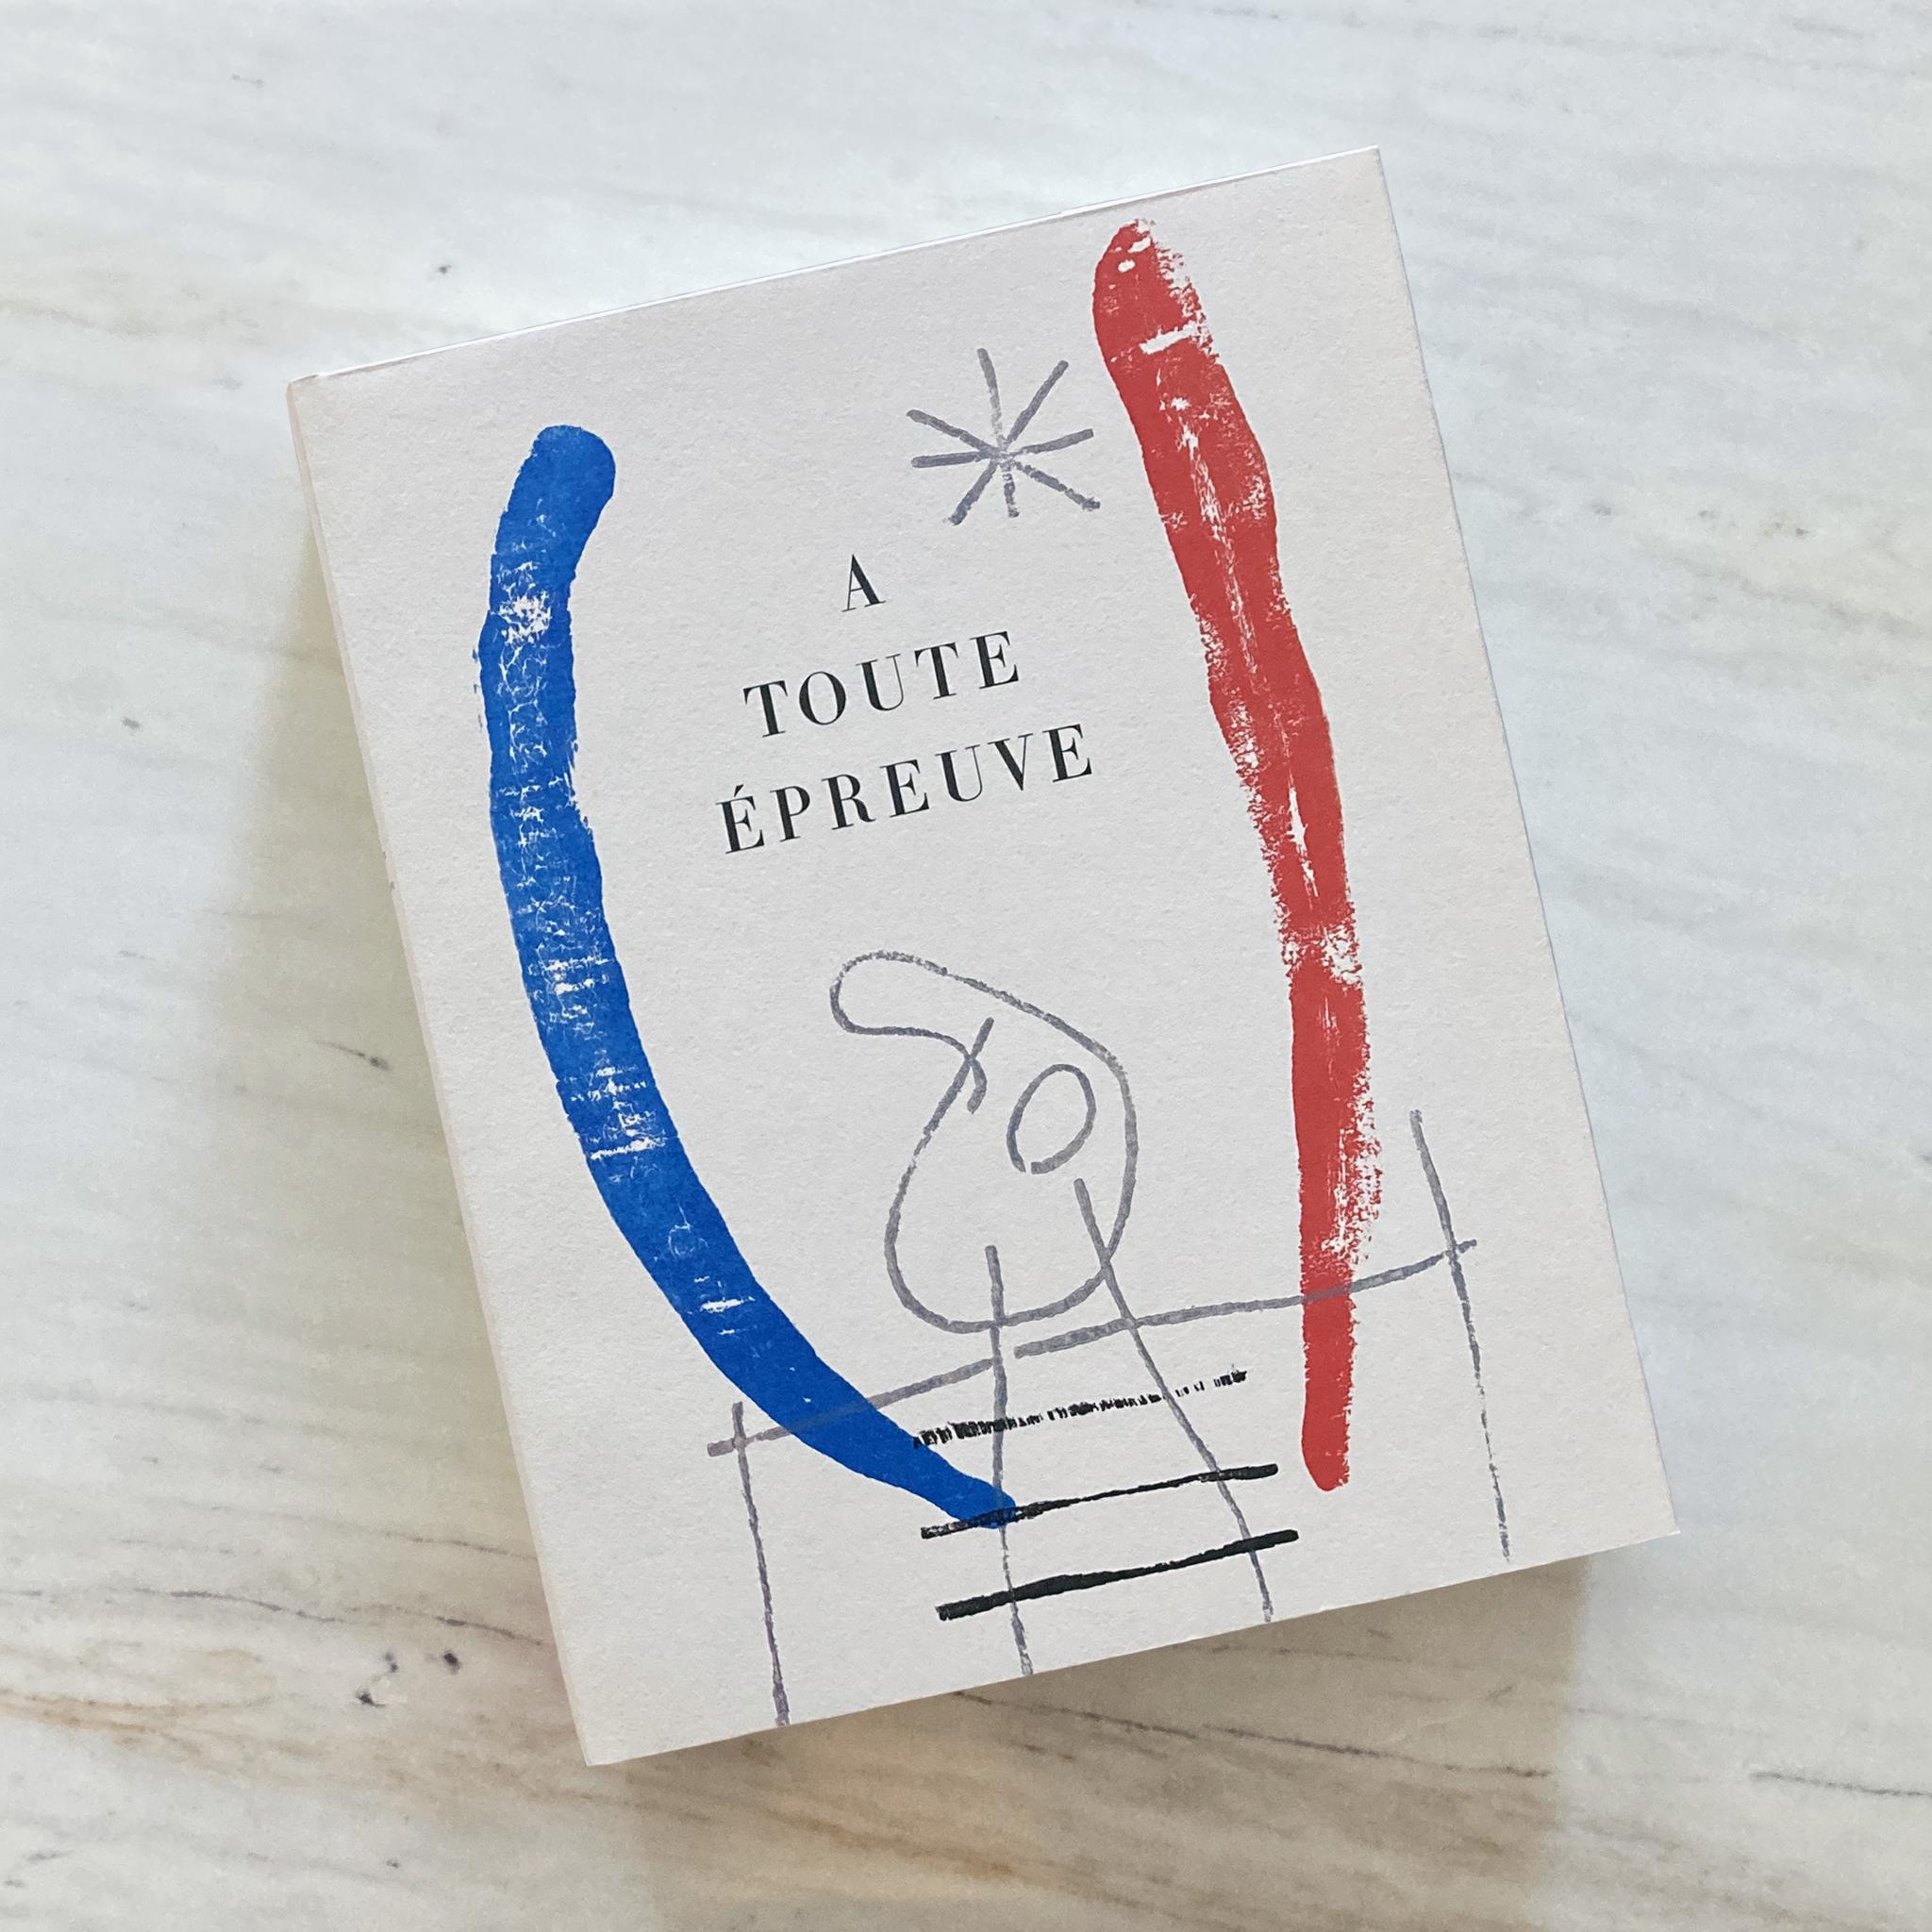 20th Century Joan Miró, A Toute Épreuve, by Paul Éluard, republished 1984, 1st edition For Sale